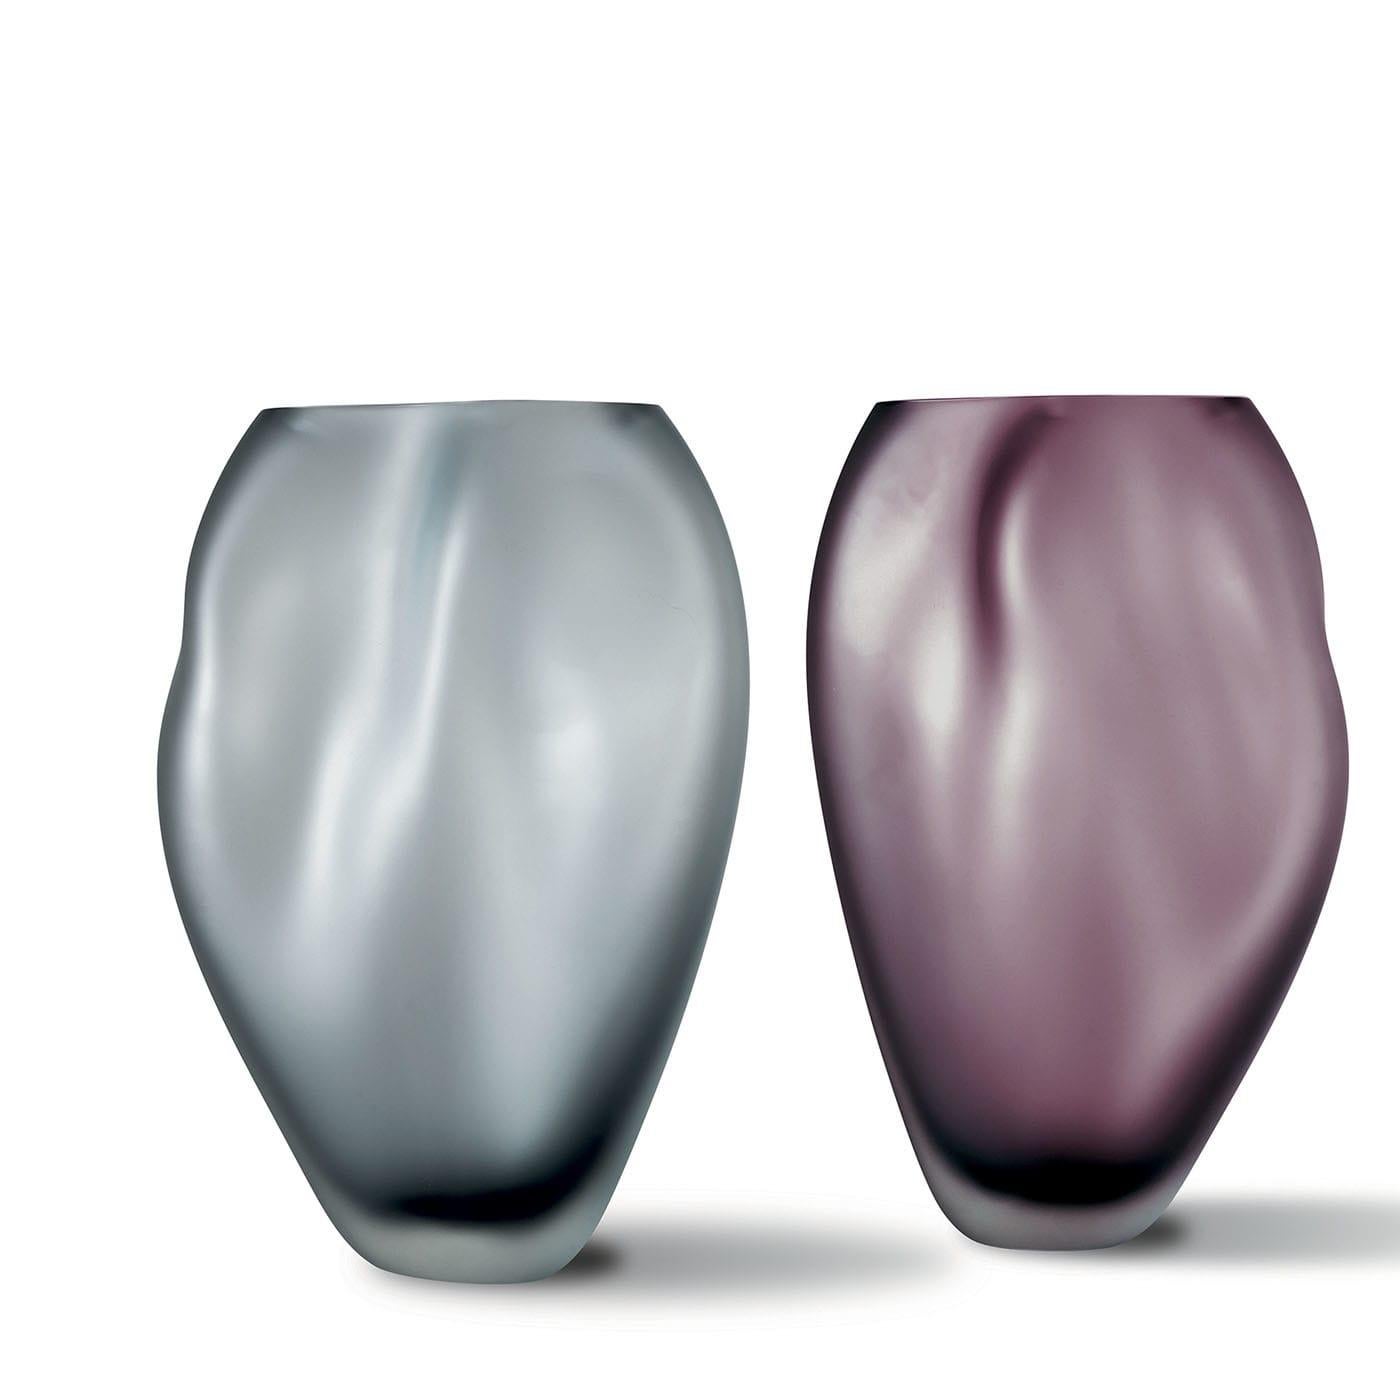 Diese amethystfarbene Vase, inspiriert durch das von der Brise leicht gekräuselte Wasser, ist ein einzigartiges, kostbares Stück, das von Meisterhand mundgeblasen wurde. Seine unverwechselbare, ätherische Form erhält er durch Erhitzen des Körpers,